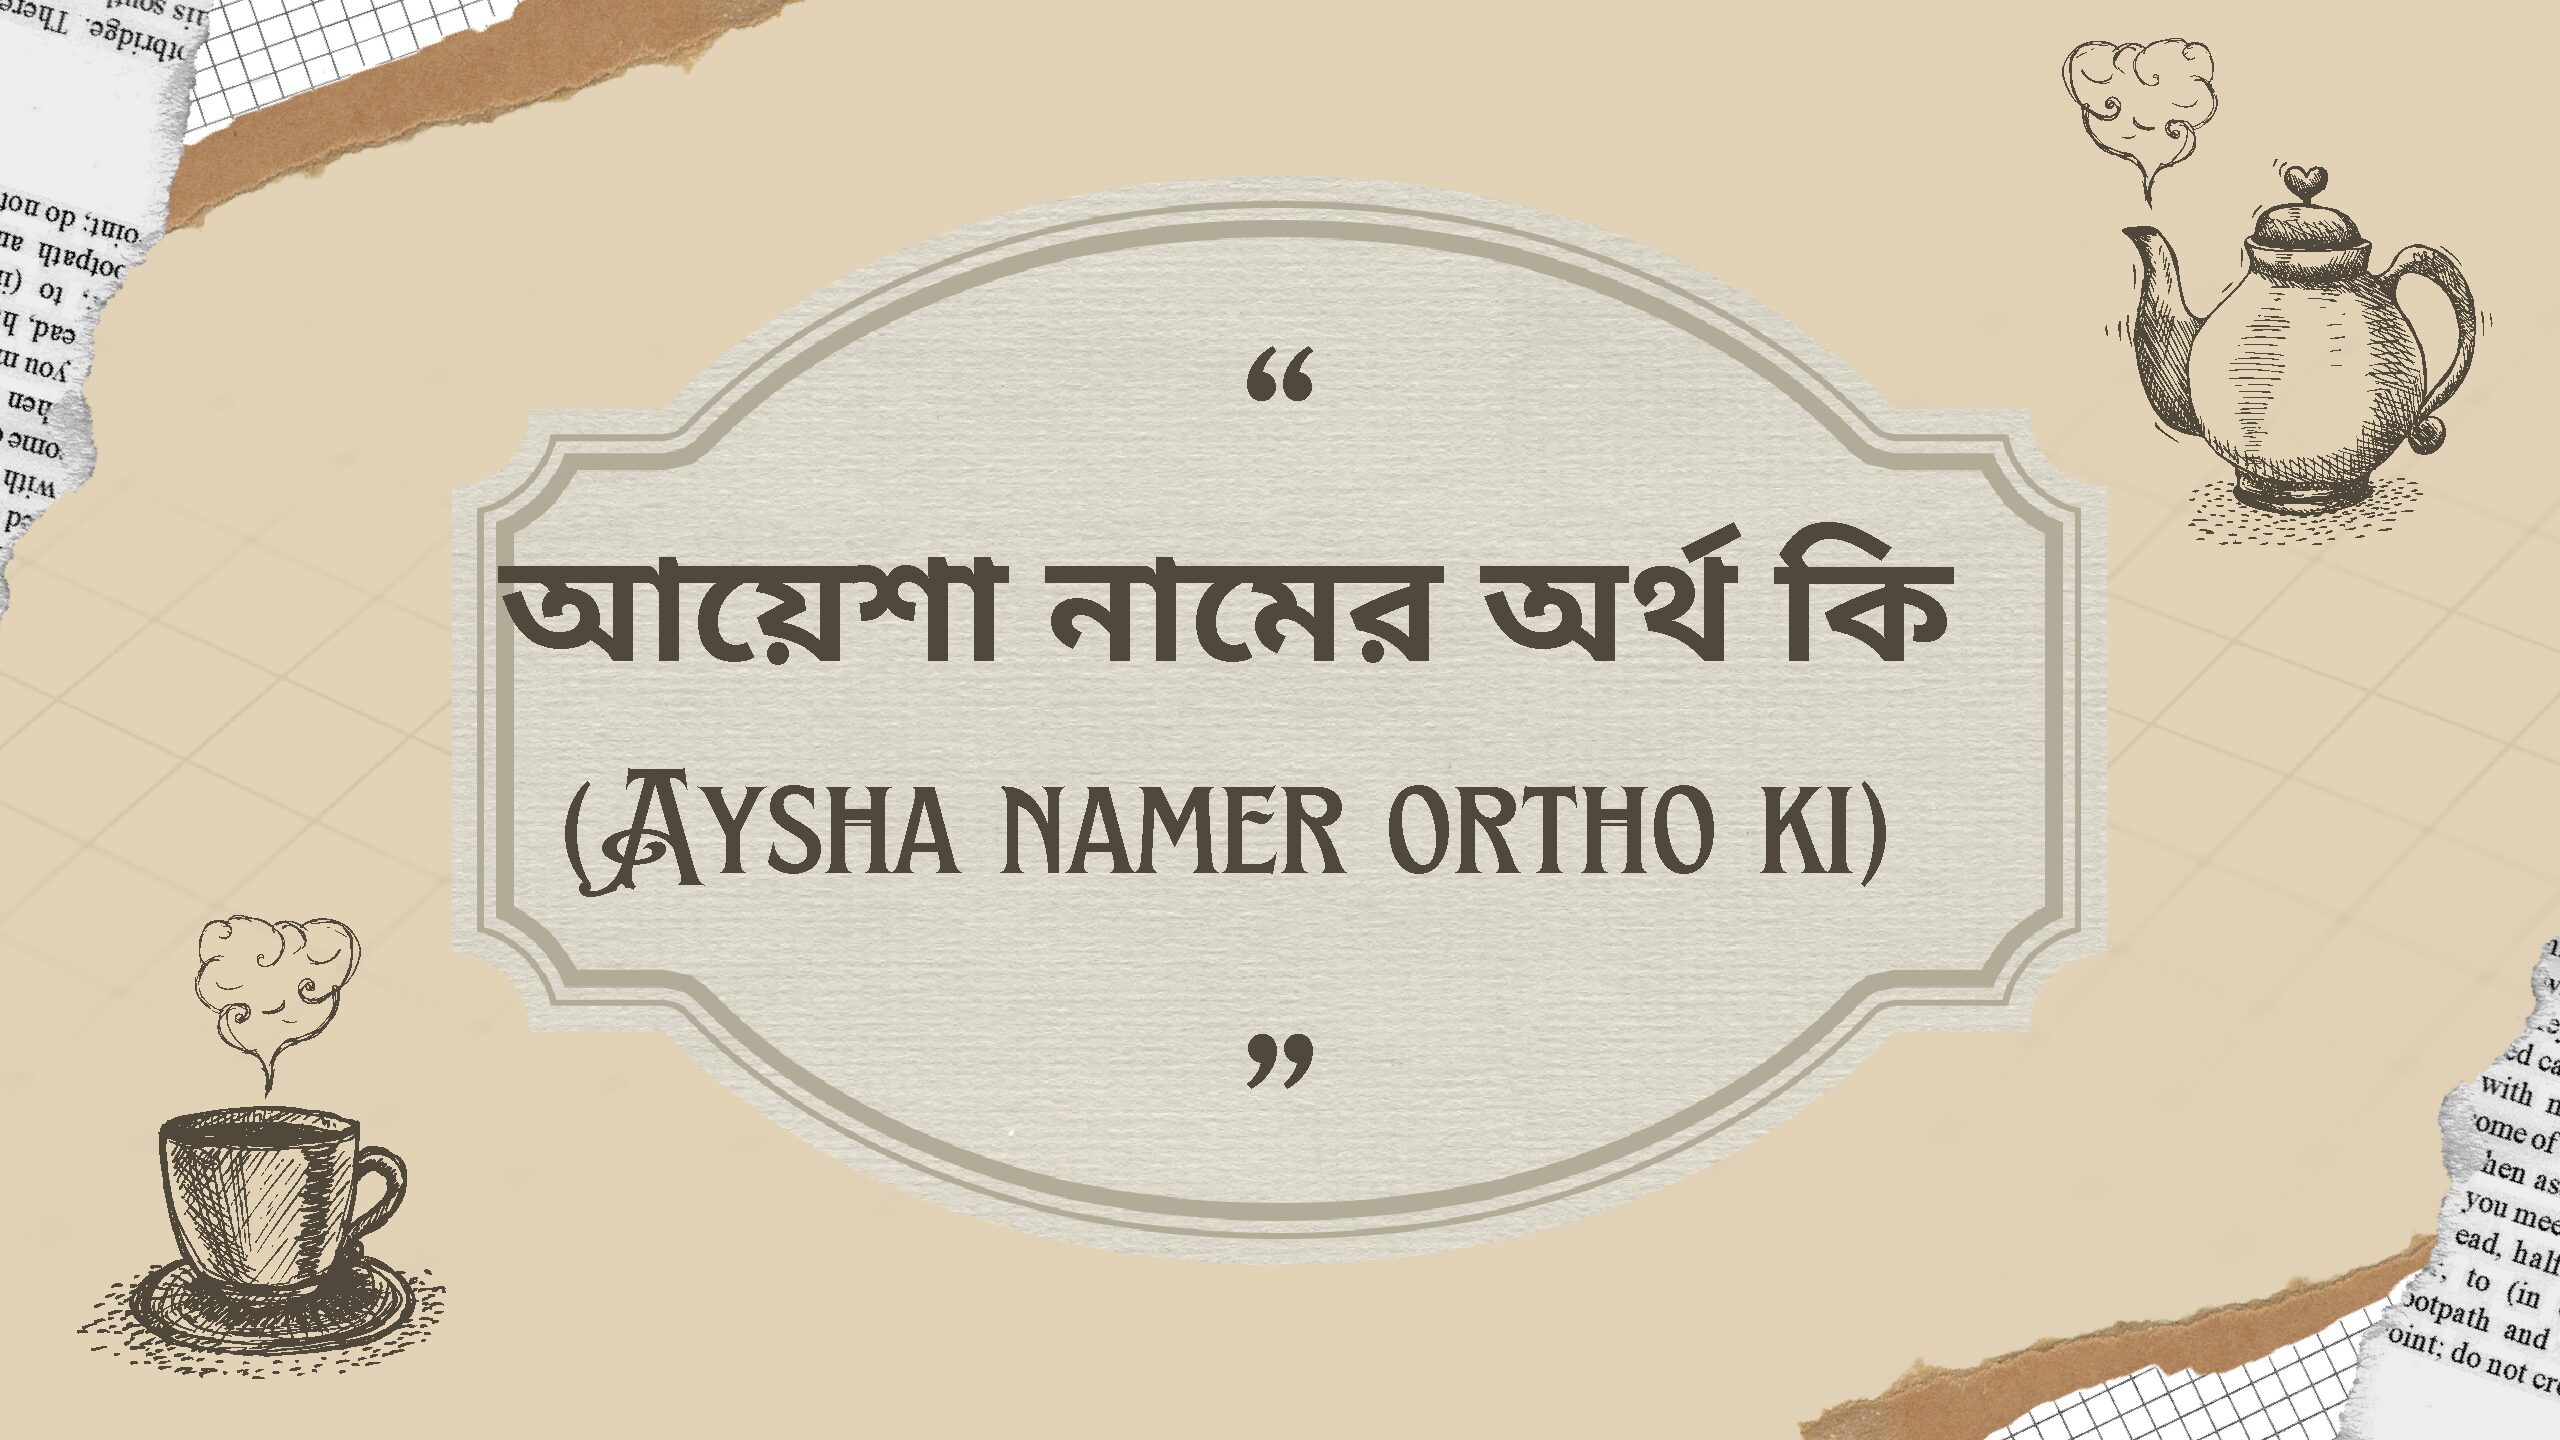 আয়েশা নামের অর্থ কি (Aysha namer ortho ki)